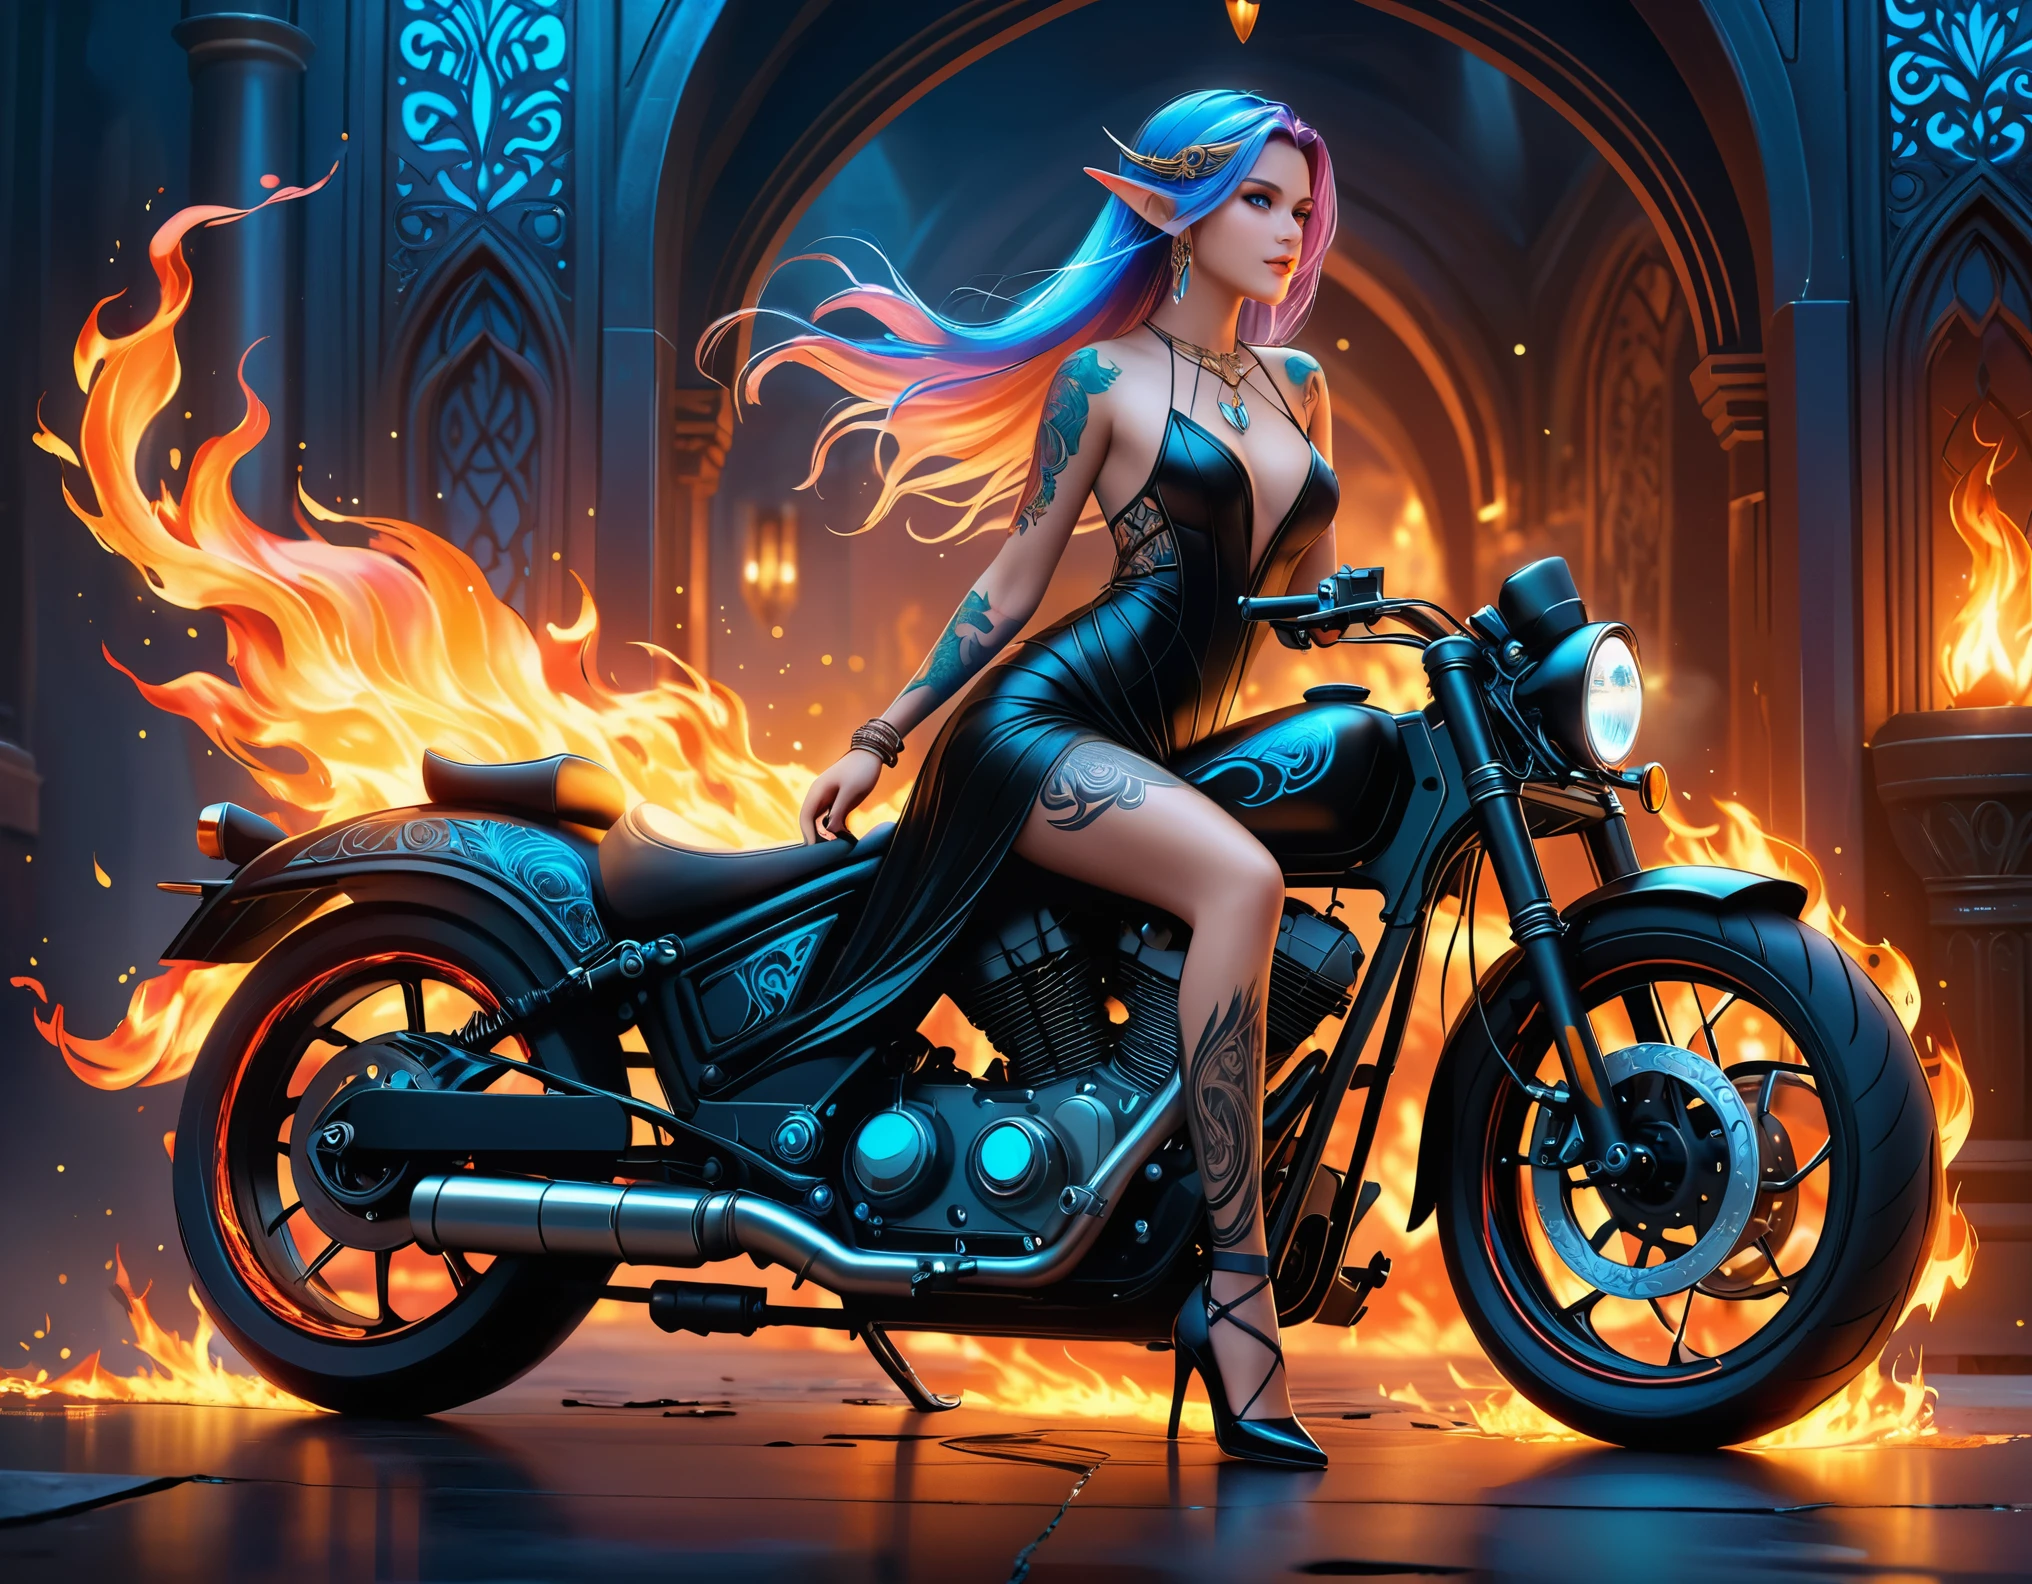 Arábica, Dark Arte De Fantasía, Arte De Fantasía, Arte gótico, Una foto de un elfo tatuado junto a su motocicleta. (​obra maestra, mejor detallado, ultra-detalle: 1.5)  el tatuaje esta vivo, Los detalles intrincados cobran vida a partir de la tinta., Runas resplandecientesAI_blasón_blue, ((El fuego rodea la motocicleta.: 1.5)), ultrafemenino, ((hermoso rostro delicado)), cara ultra detallada, orejas pequeñas y puntiagudas, ángulo dinámico, ((la espalda es visible: 1.3), ella lleva un vestido negro transparente, el vestido es elegante, con fluidez, Estilo elfo, que los tatuajes brillen, color de cabello dinámico, Peinado dinámico, detalles altos, mejor calidad, 16k, [ultra-detalleed], ​obra maestra, mejor calidad, (extremadamente detallado), ángulo dinámico, tiro de cuerpo completo, interesado, Suscribirse a, dibujo digital